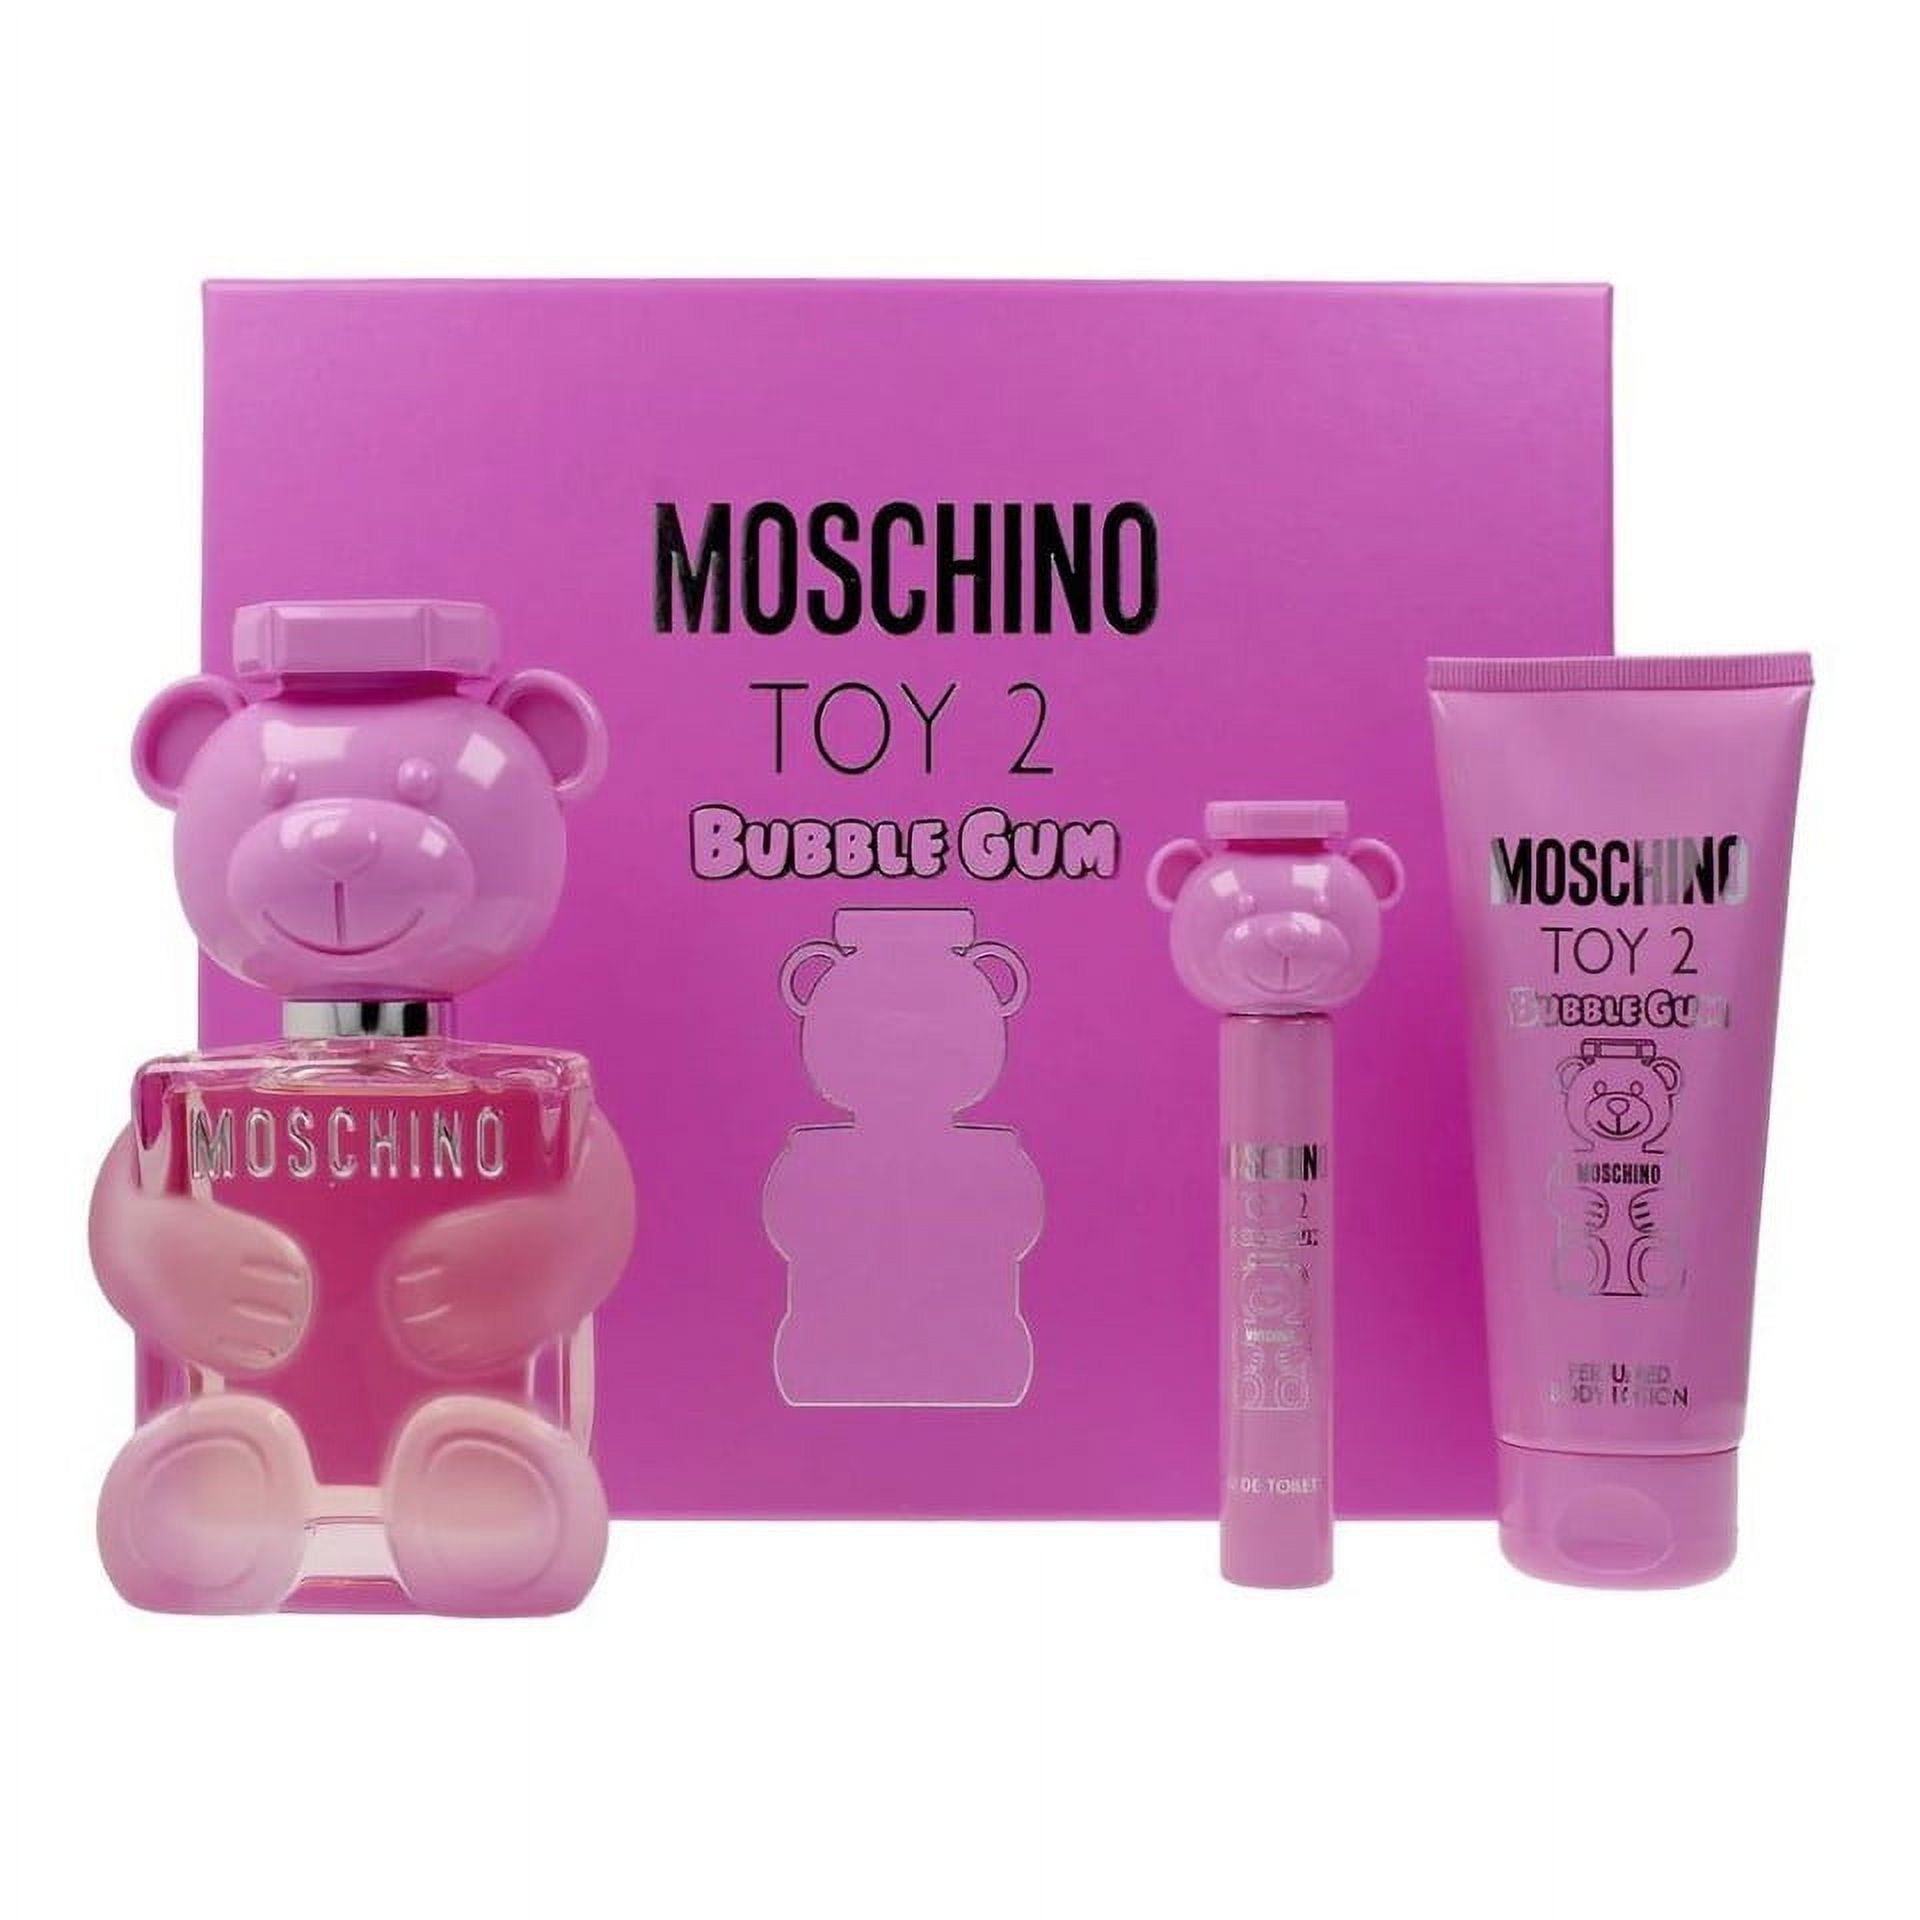 Moschino Toy 2 BubbleGum Eau de Toilette 3PCS Gift Set For Women ...